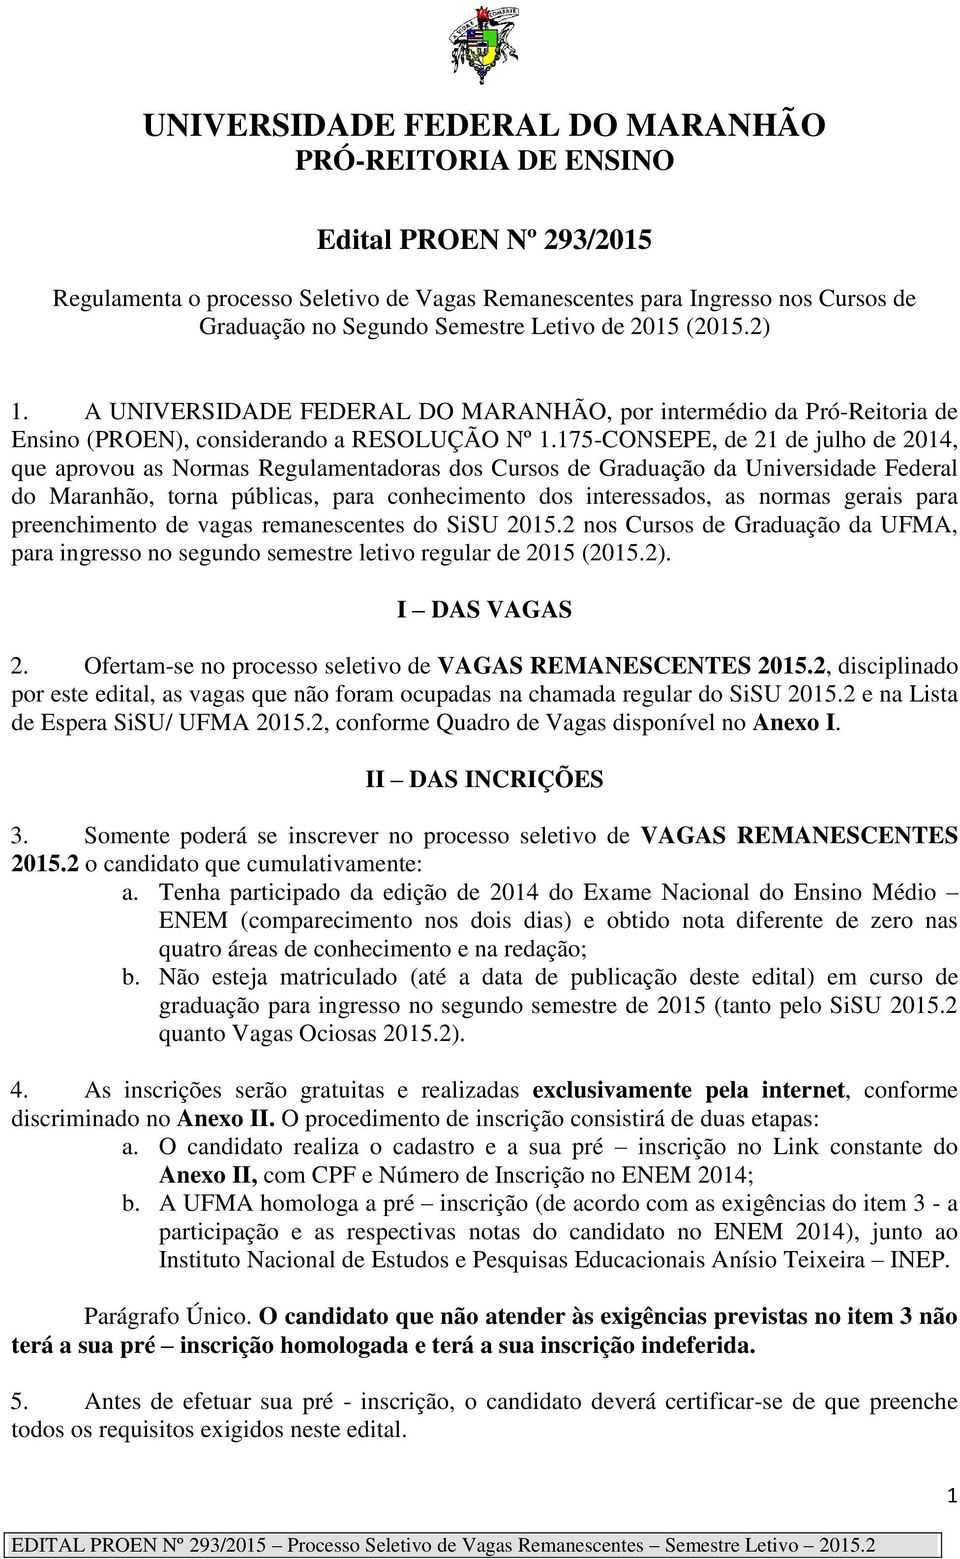 175-CONSEPE, de 21 de julho de 2014, que aprovou as Normas Regulamentadoras dos Cursos de Graduação da Universidade Federal do Maranhão, torna públicas, para conhecimento dos interessados, as normas